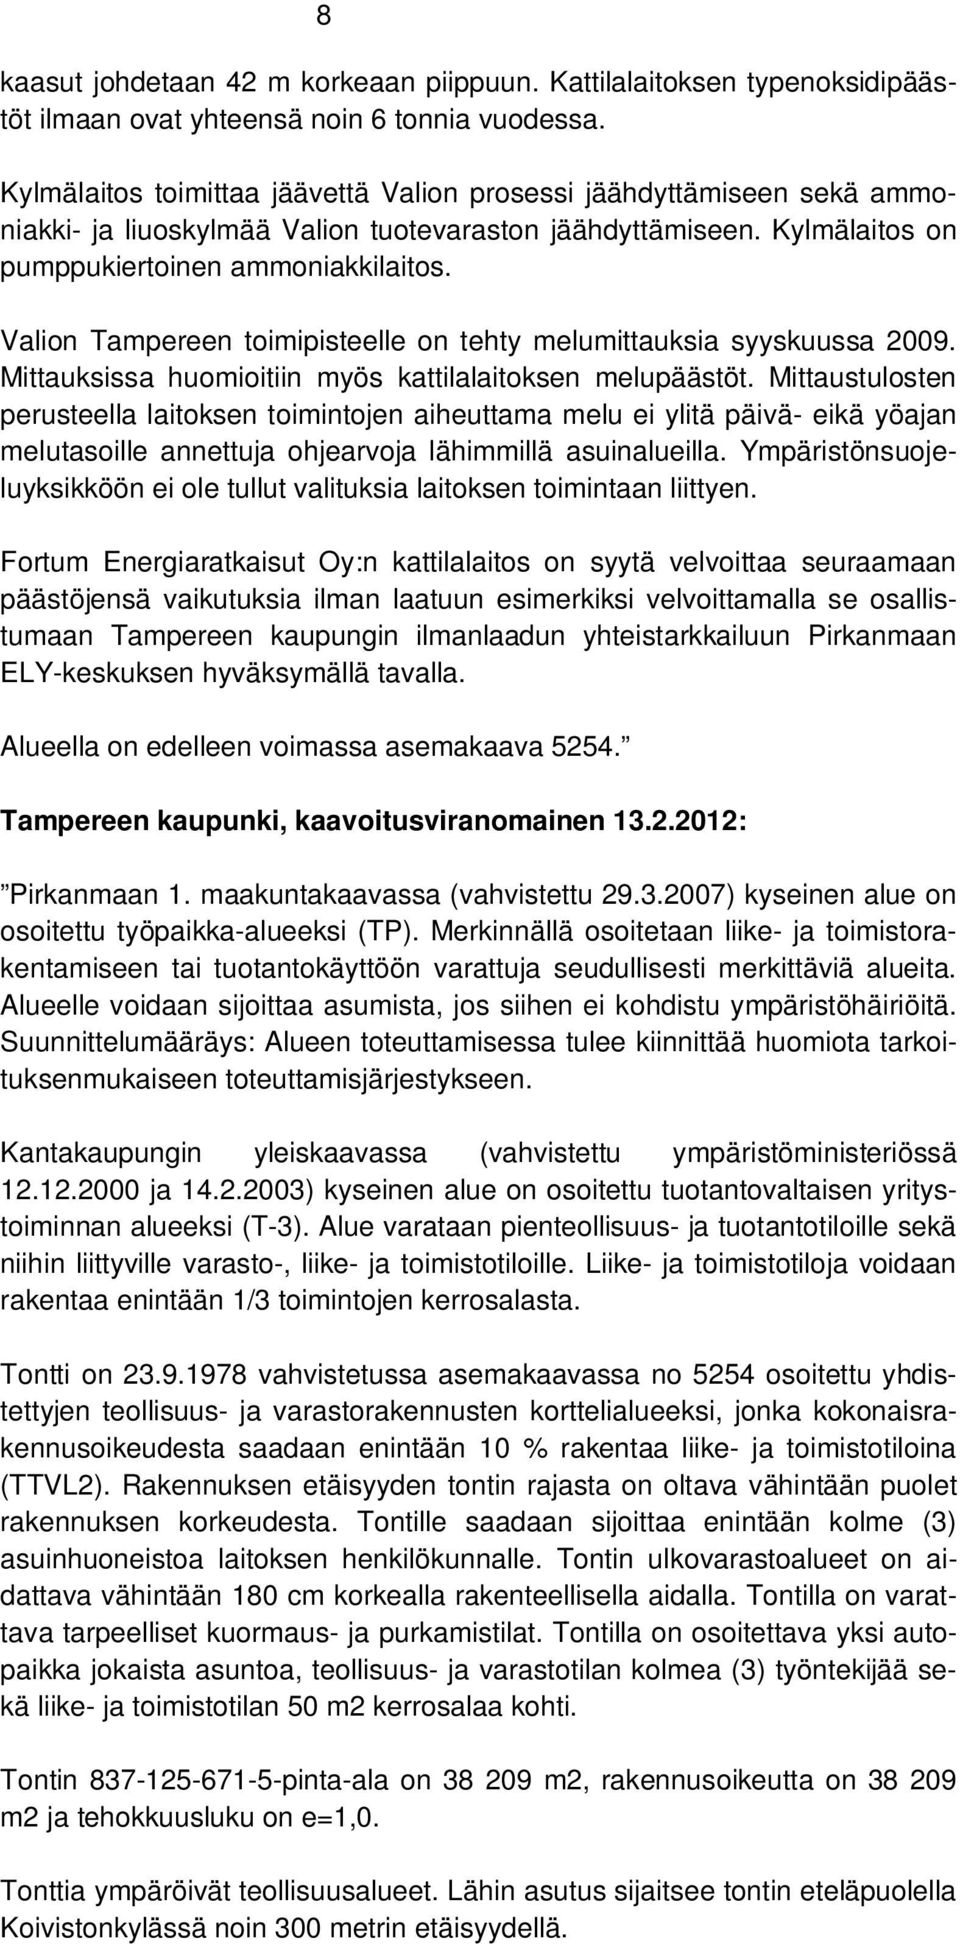 Valion Tampereen toimipisteelle on tehty melumittauksia syyskuussa 2009. Mittauksissa huomioitiin myös kattilalaitoksen melupäästöt.